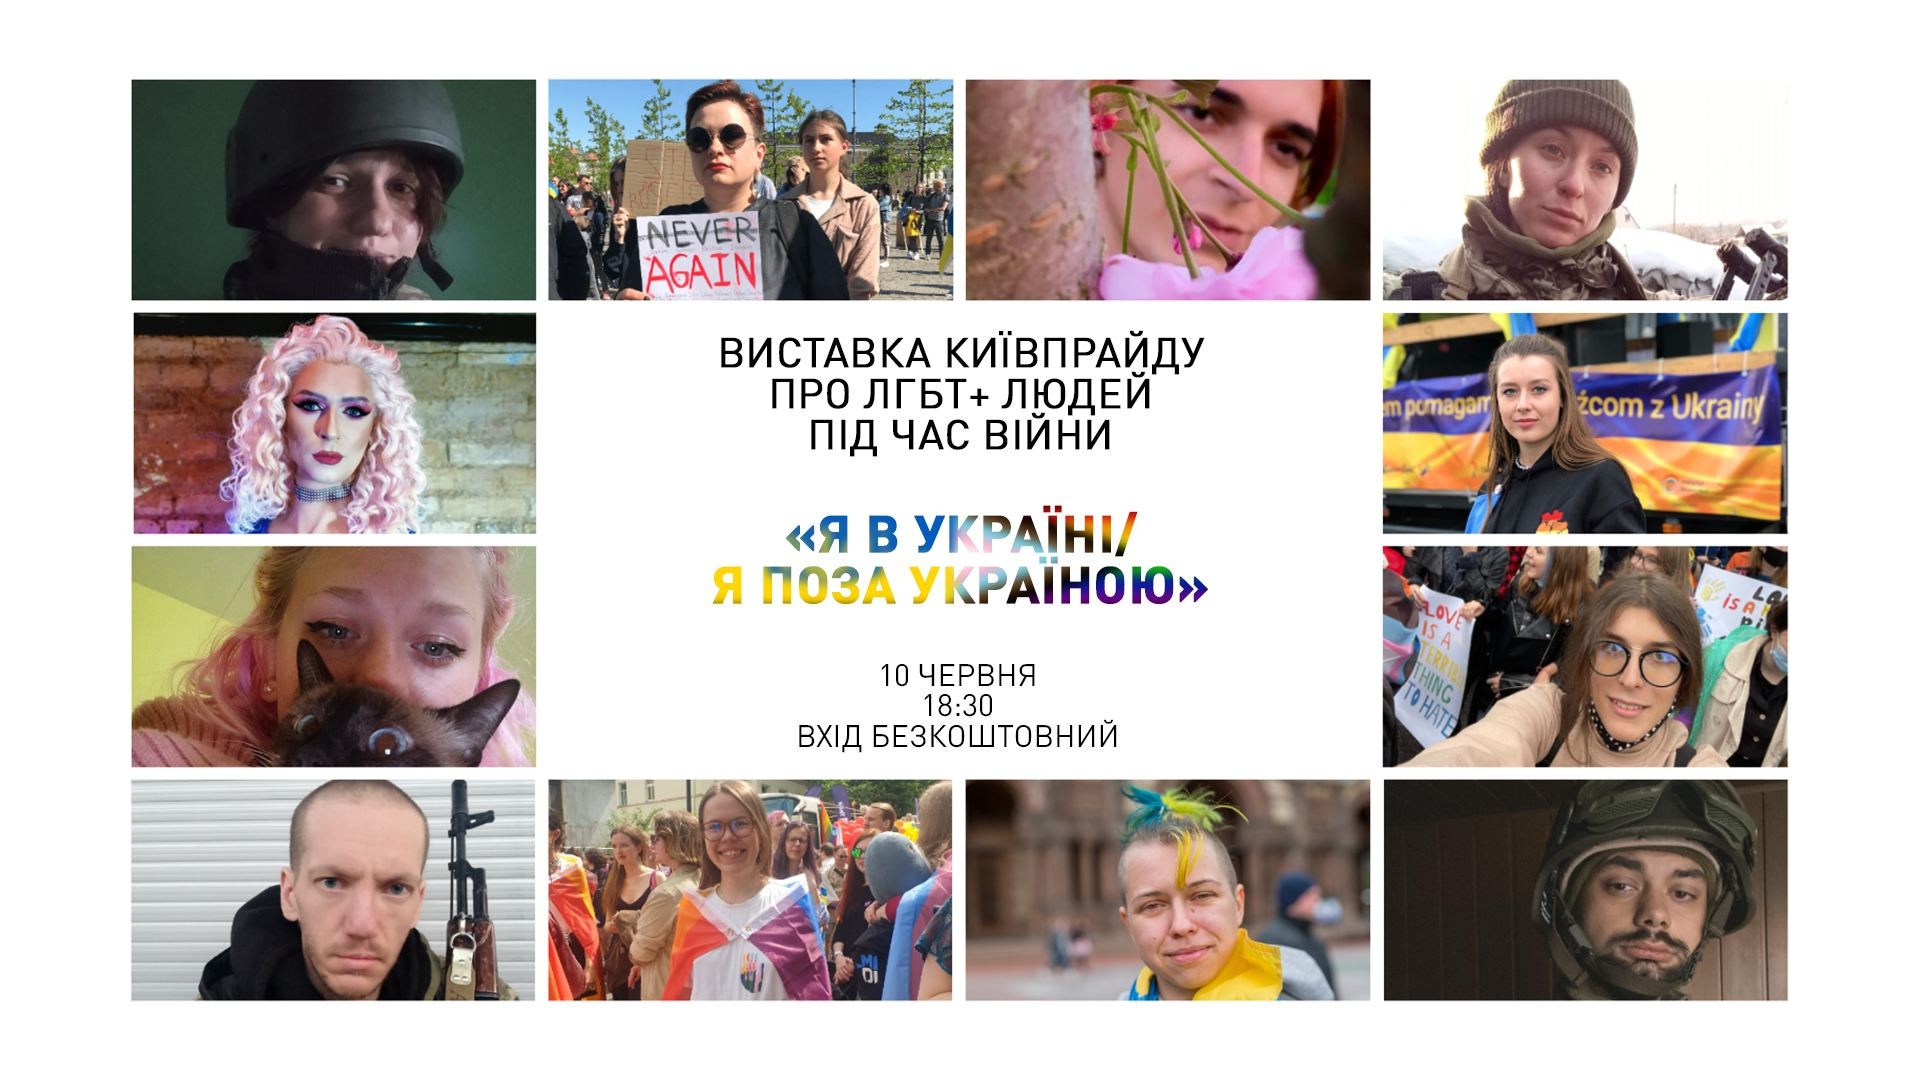 10 червня — презентація виставки про ЛГБТ+ людей під час війни «Я в Україні / Я поза Україною»